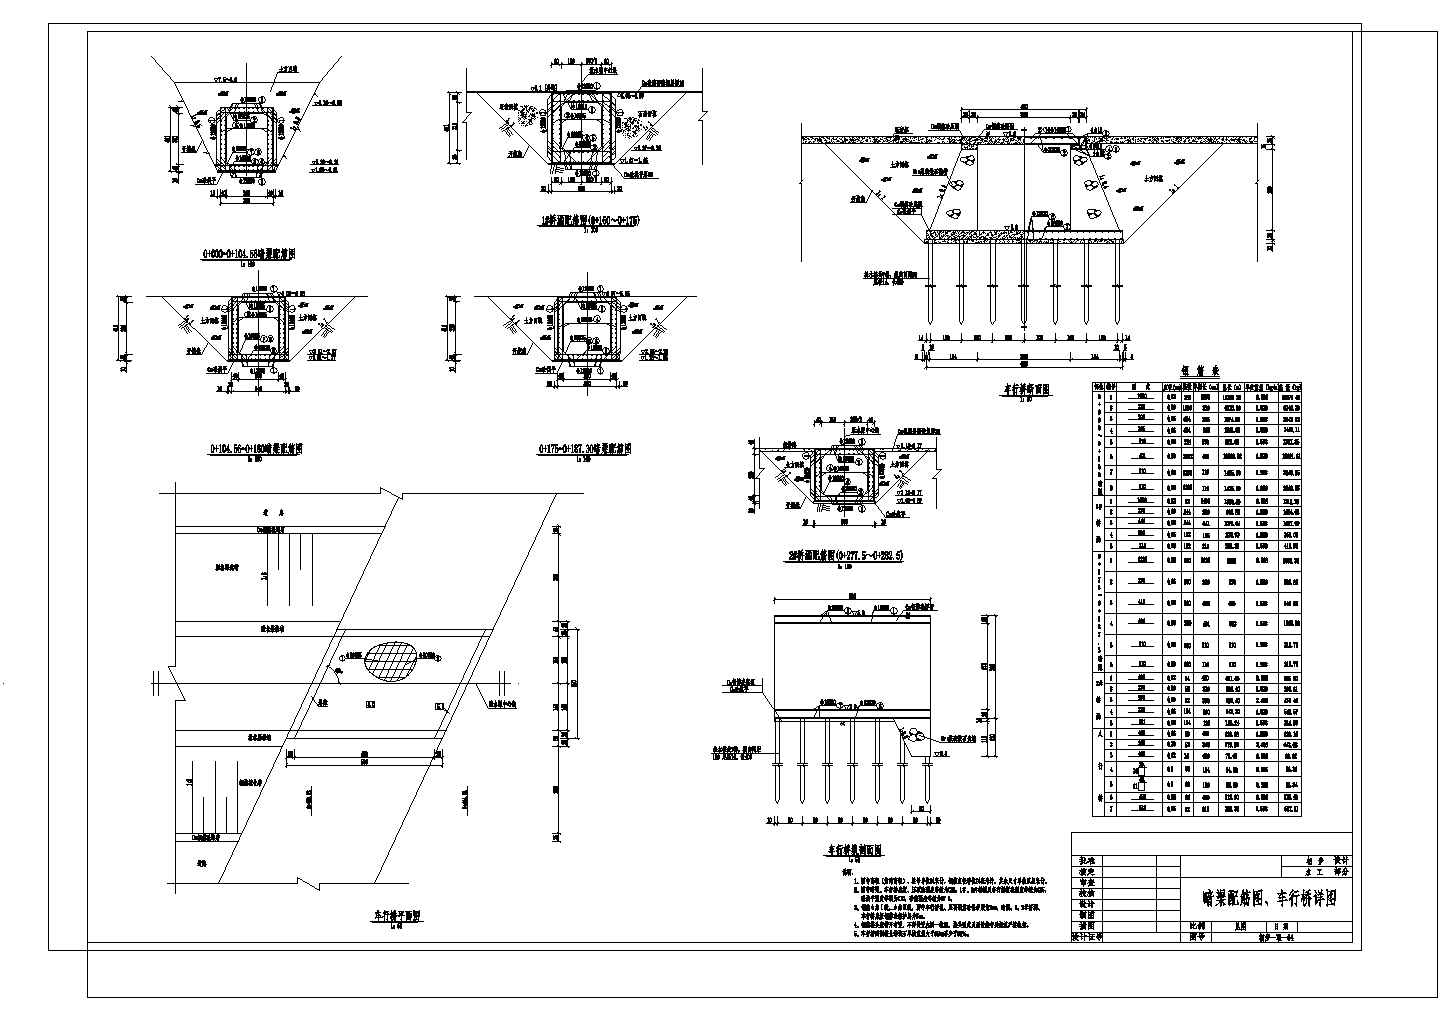 引水工程桩基平面布置图、明渠及节制闸结构图 (初设)